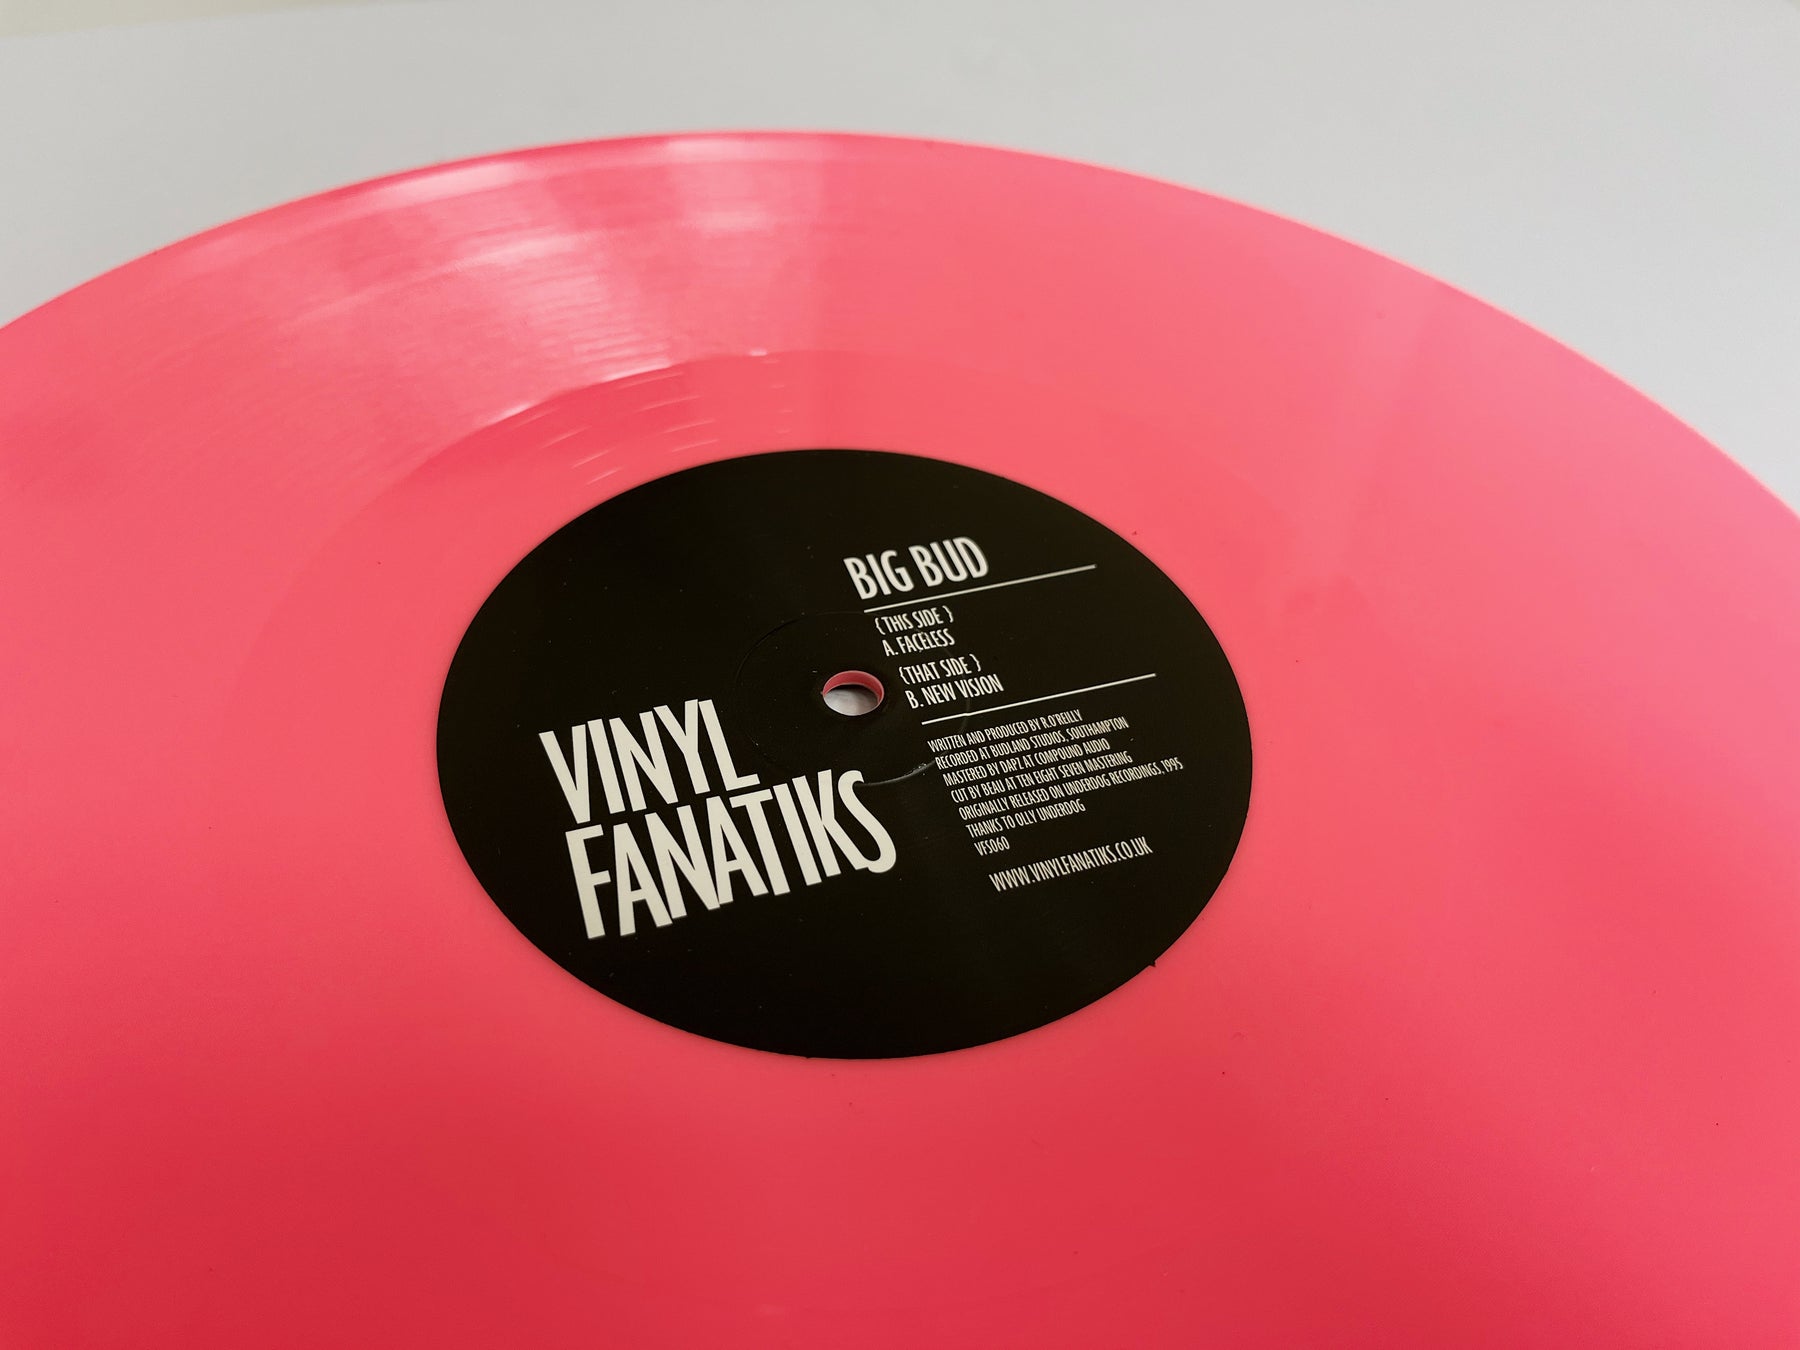 Big Bud - Faceless/New Vision - VFS060 – Vinyl Fanatiks